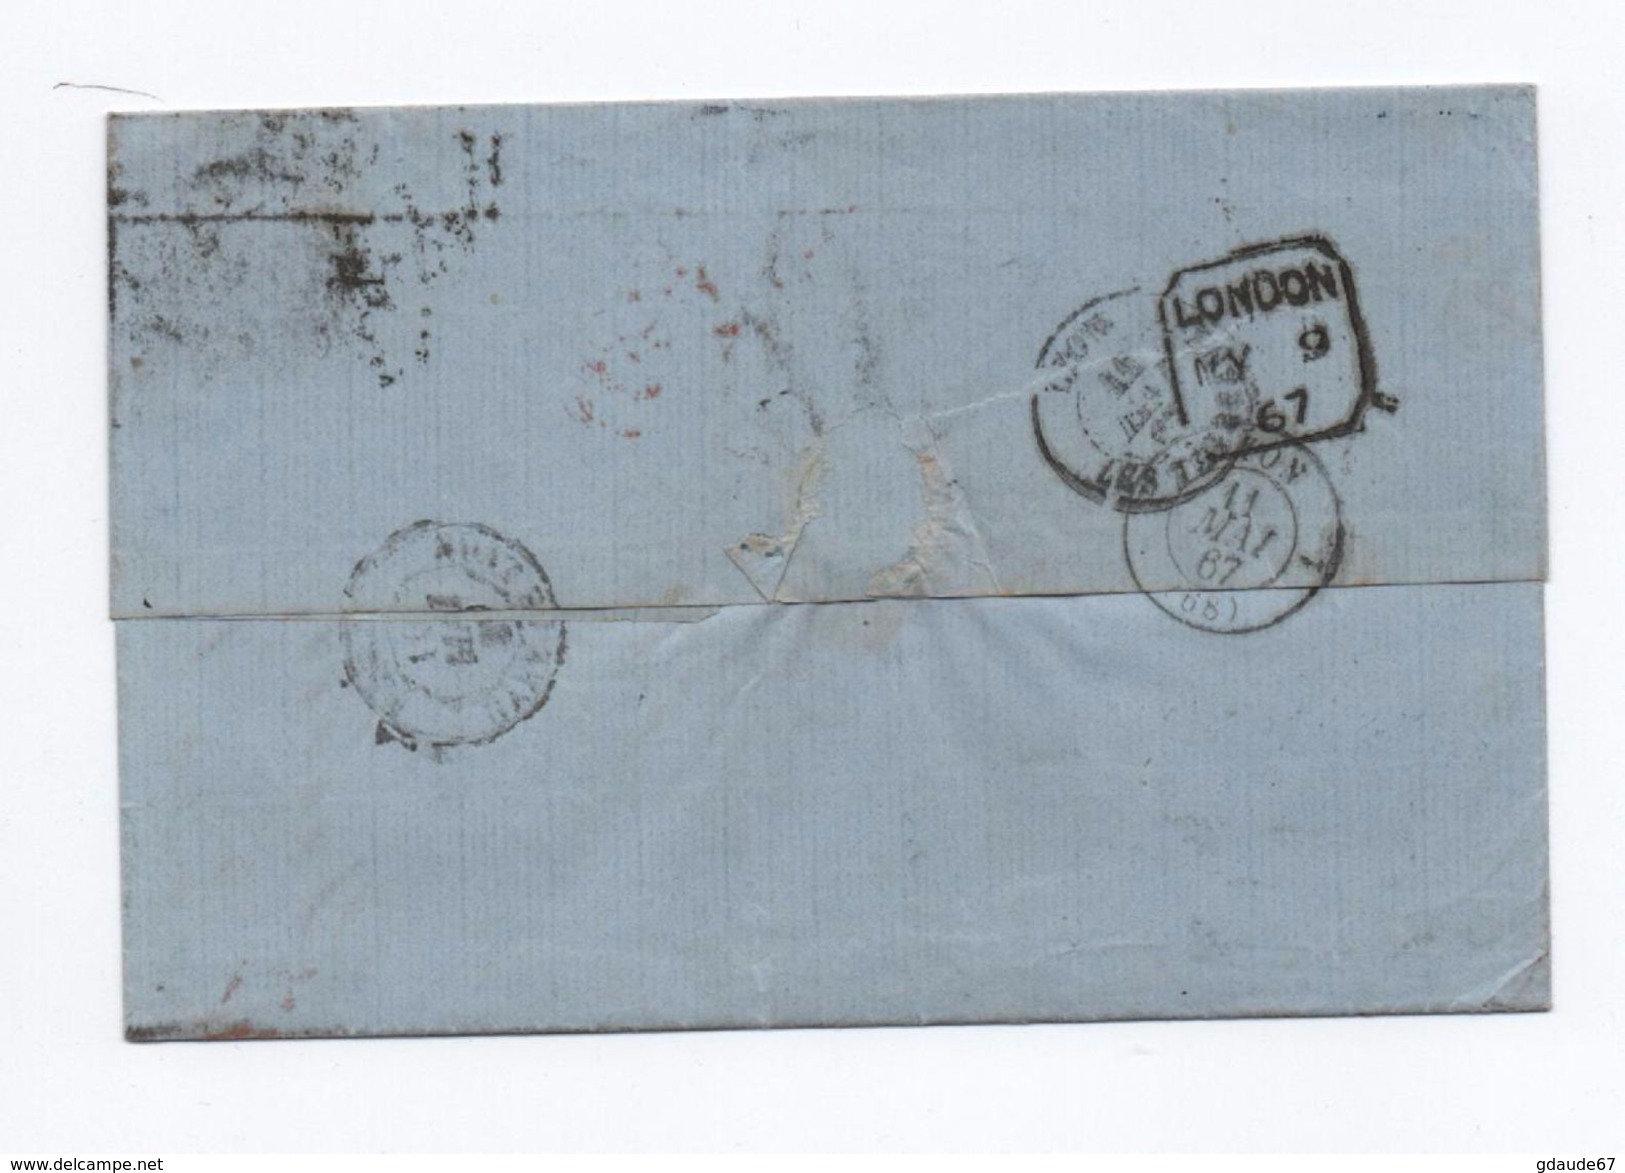 1867 - LETTRE De LONDON Avec N° 32 Pour La FRANCE Avec CACHET NOIR ANGL. AMB CALAIS - Postmark Collection